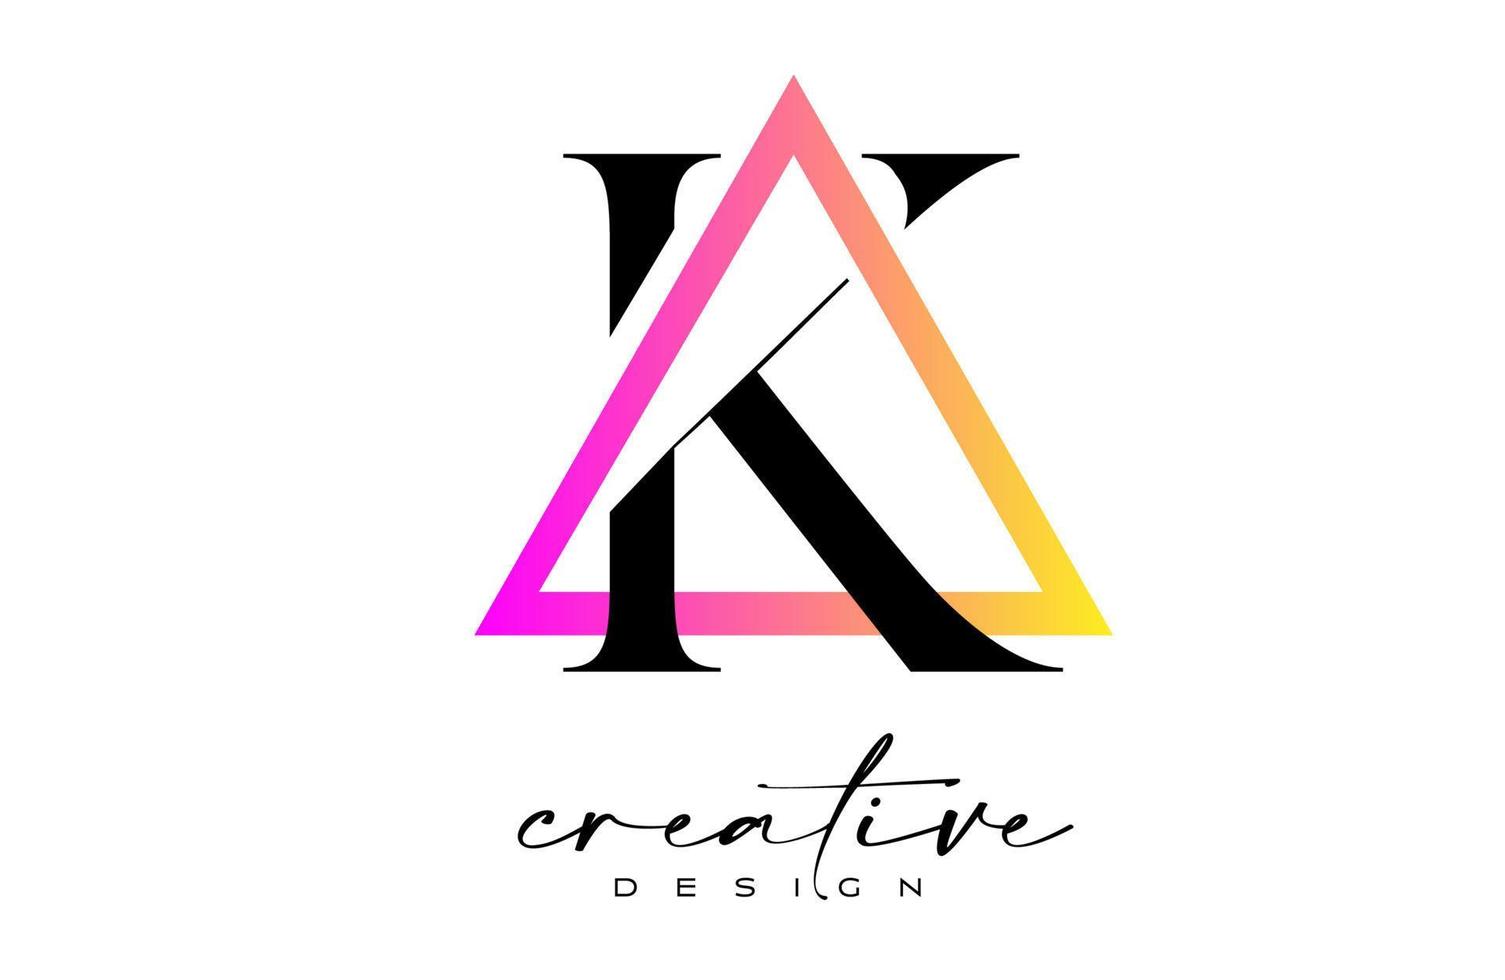 buchstabe k logo in einem dreieck mit kreativem schnittdesign. vektor